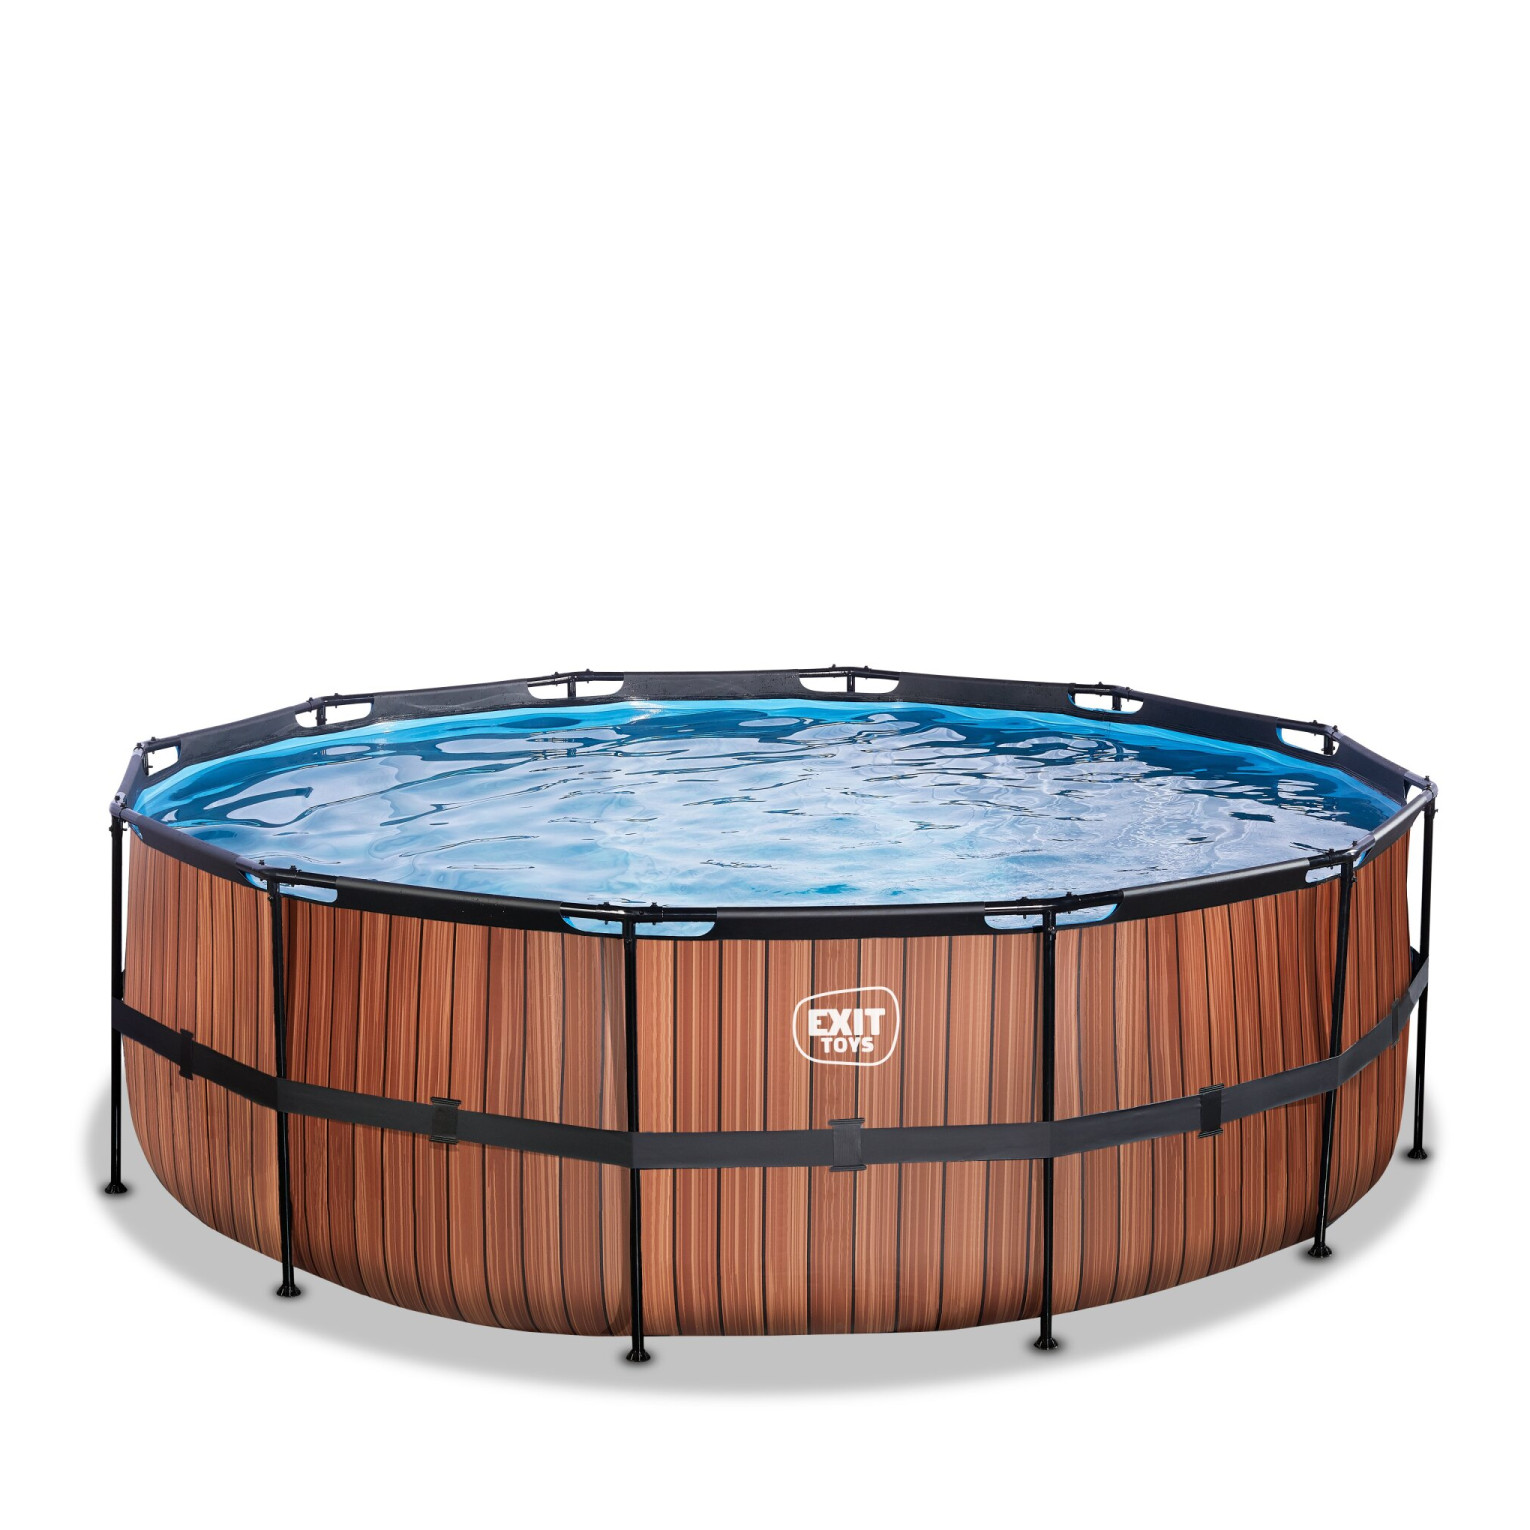 EXIT Wood zwembad ø427x122cm met filterpomp - bruin